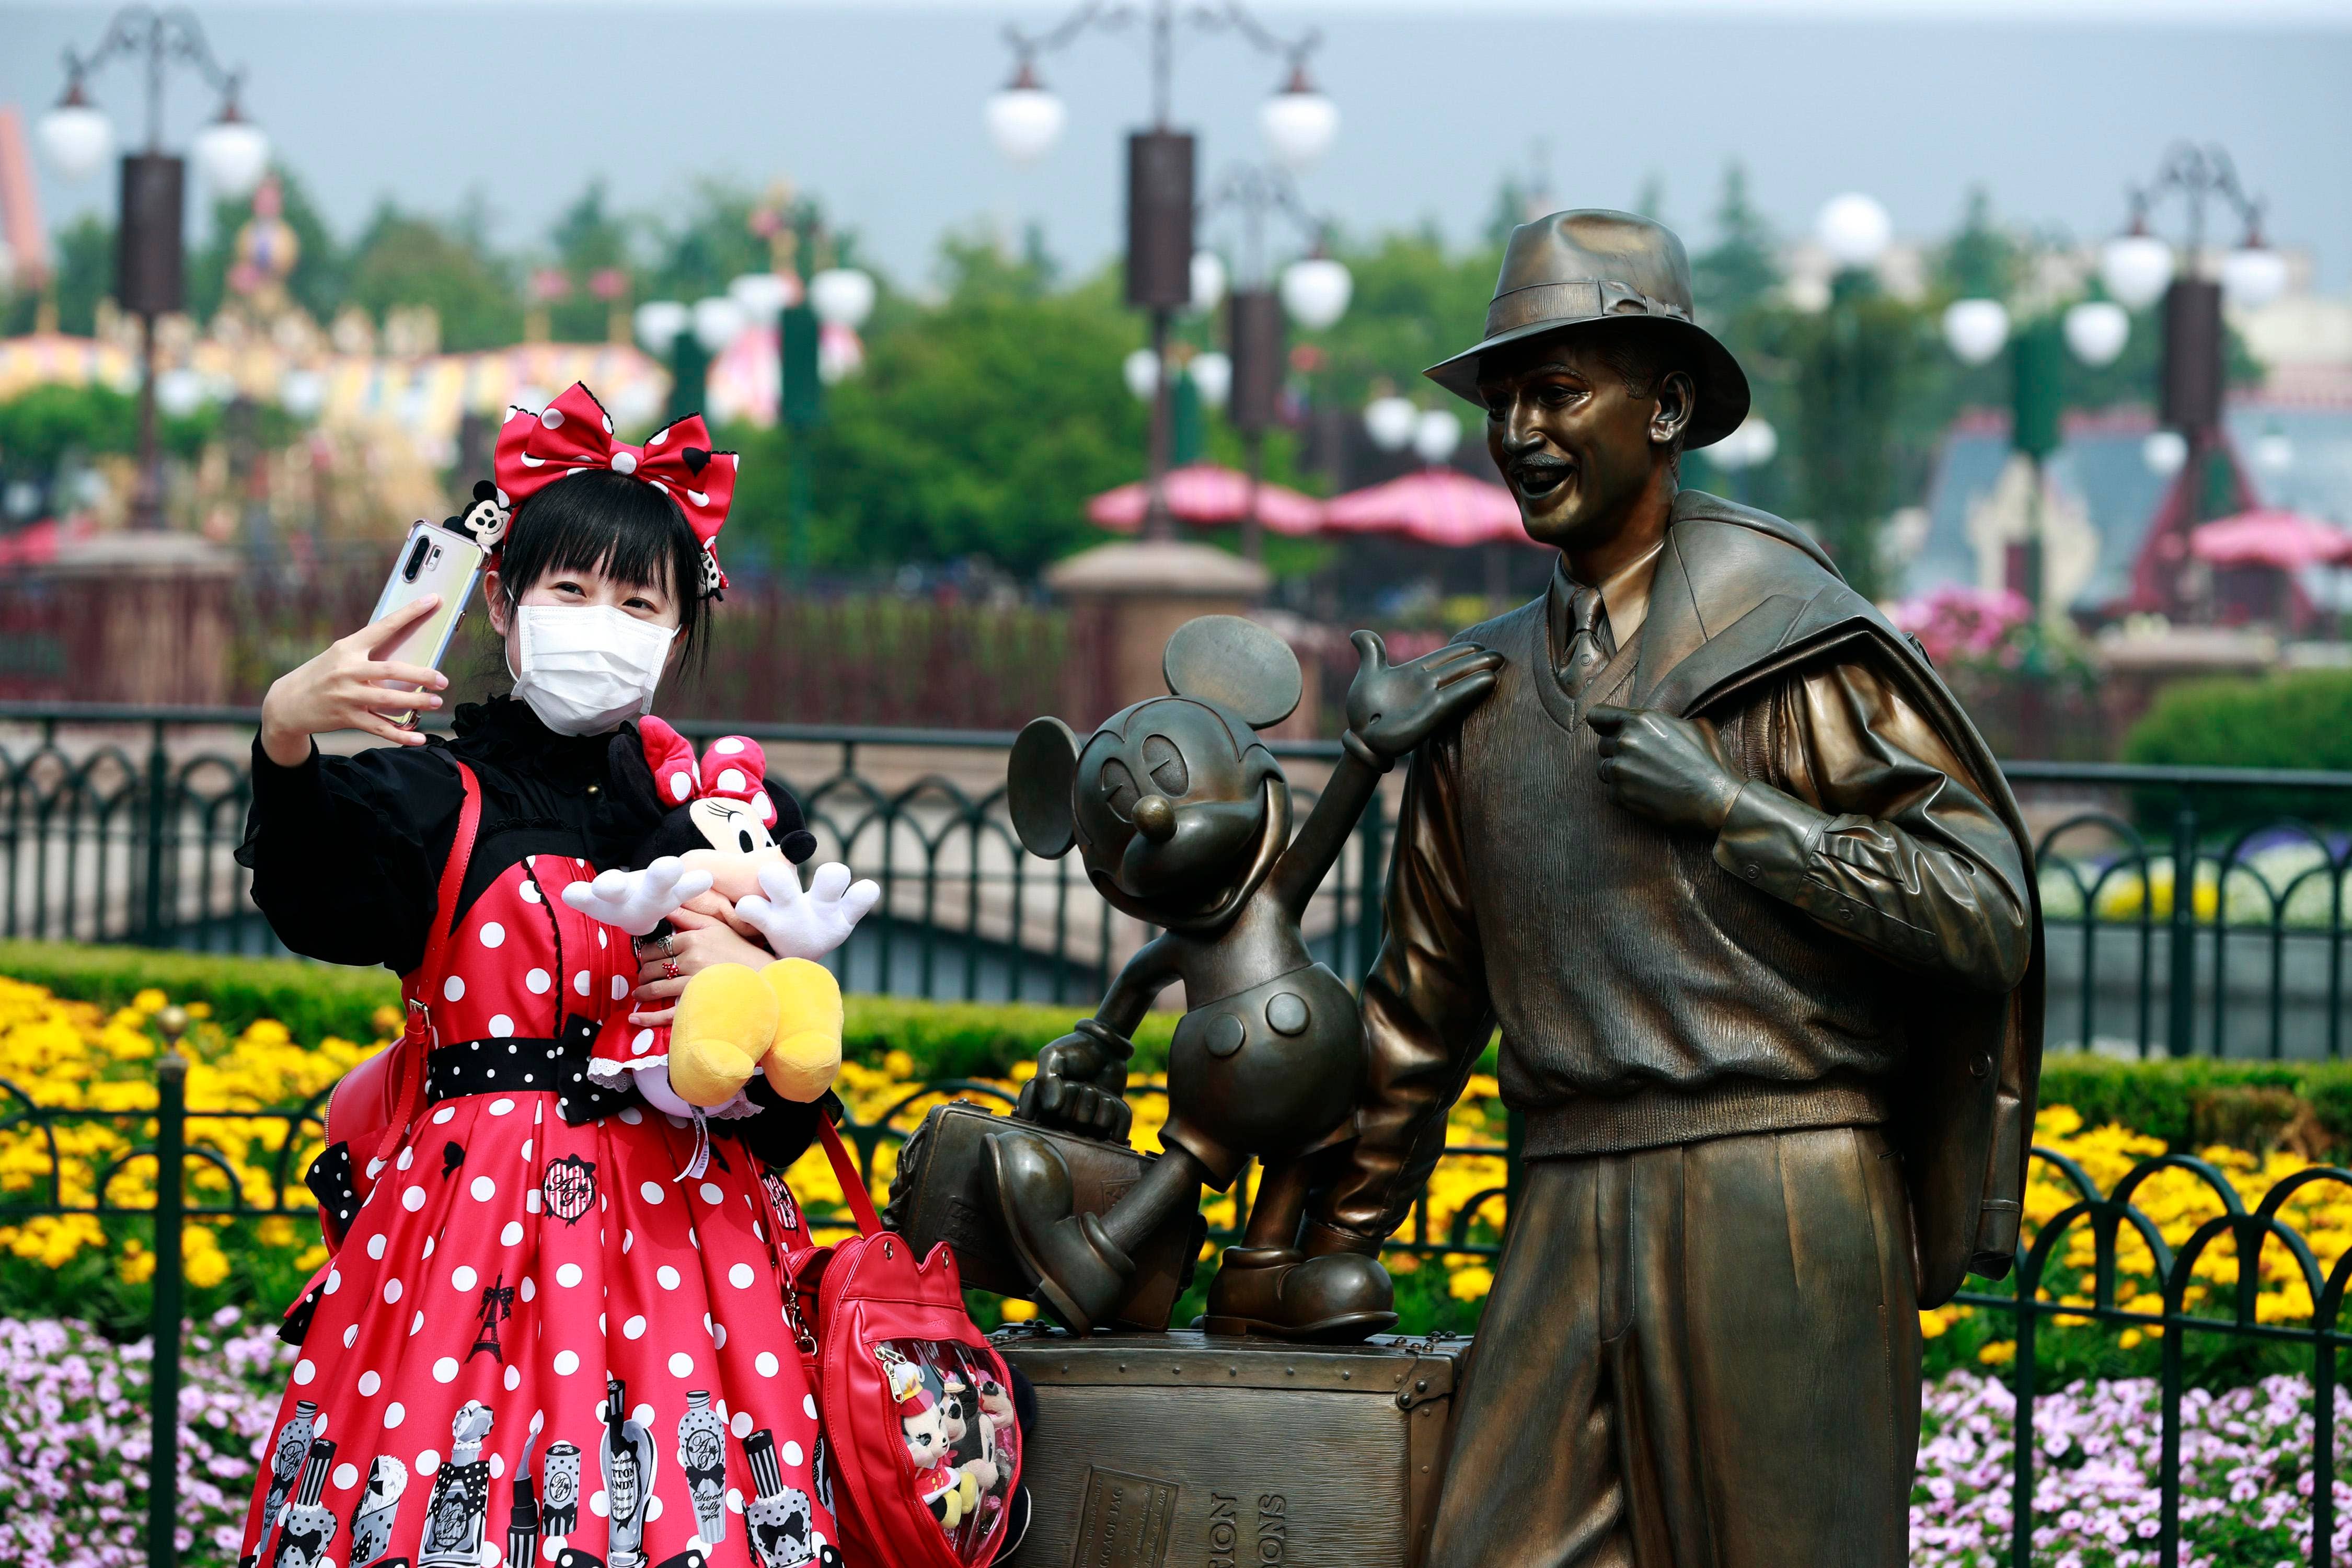 Shanghai Disney je dočasně uzavřen, protože Čína bojuje s další vlnou COVID